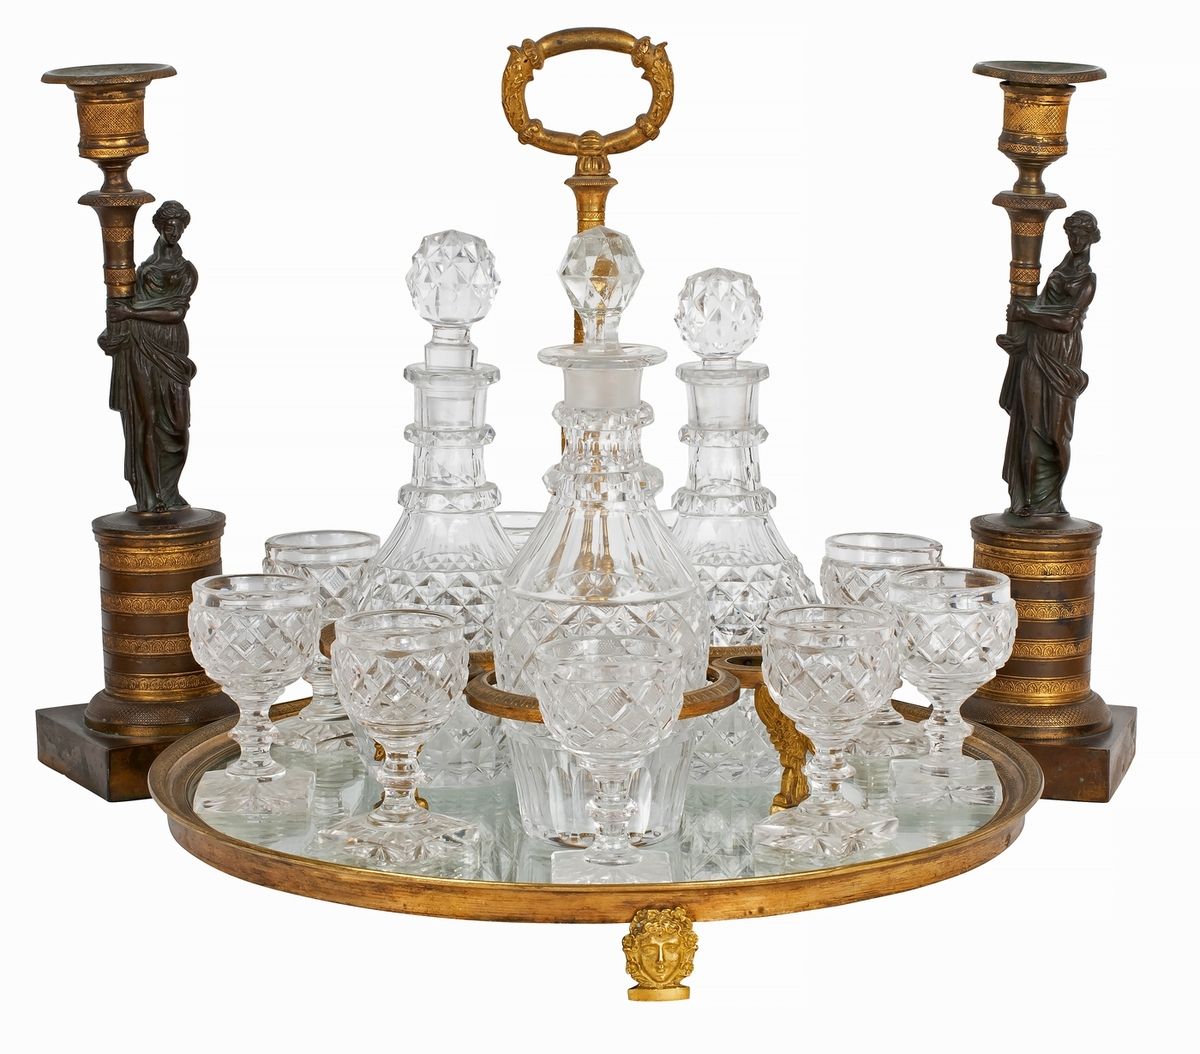 Null 一对帝国风格的青铜烛台，有两种颜色，装饰着手持火炬的妇女，一个帝国风格的镀金青铜中心器，装饰着天鹅和面具，包括3个醒酒器和10个切割水晶杯。
烛台是1&hellip;